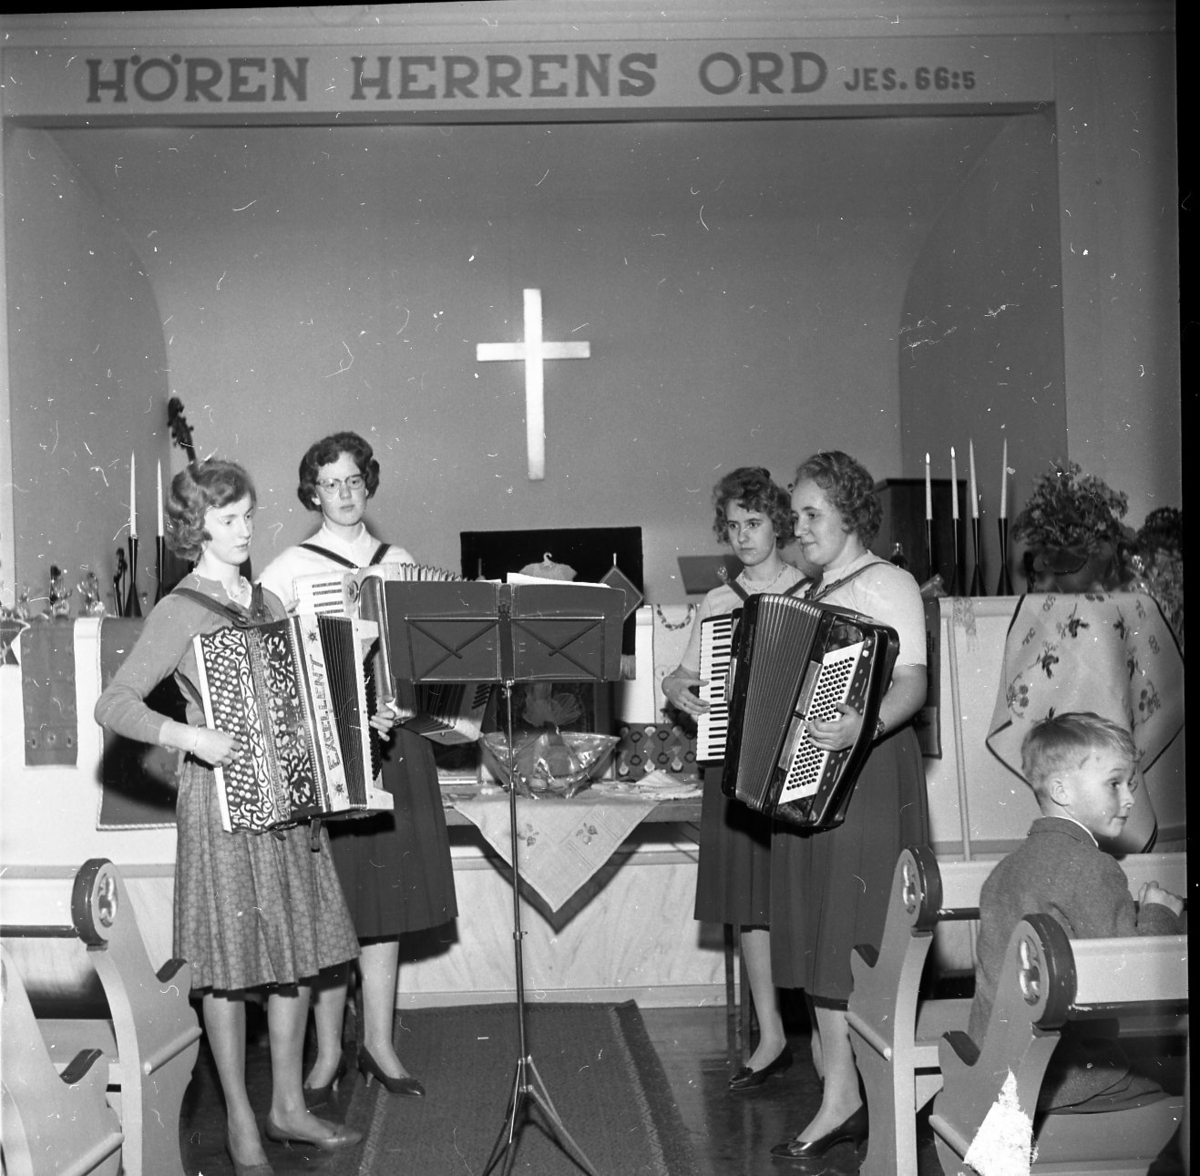 Fyra kvinnor står och spelar dragspel framför ett altare. Bakom dem hänger ett kors. På väggen bakom dem står "HÖREN HERRENS ORD Jes: 66.5". Interiörbild från Norra missionshuset i Skärstad.